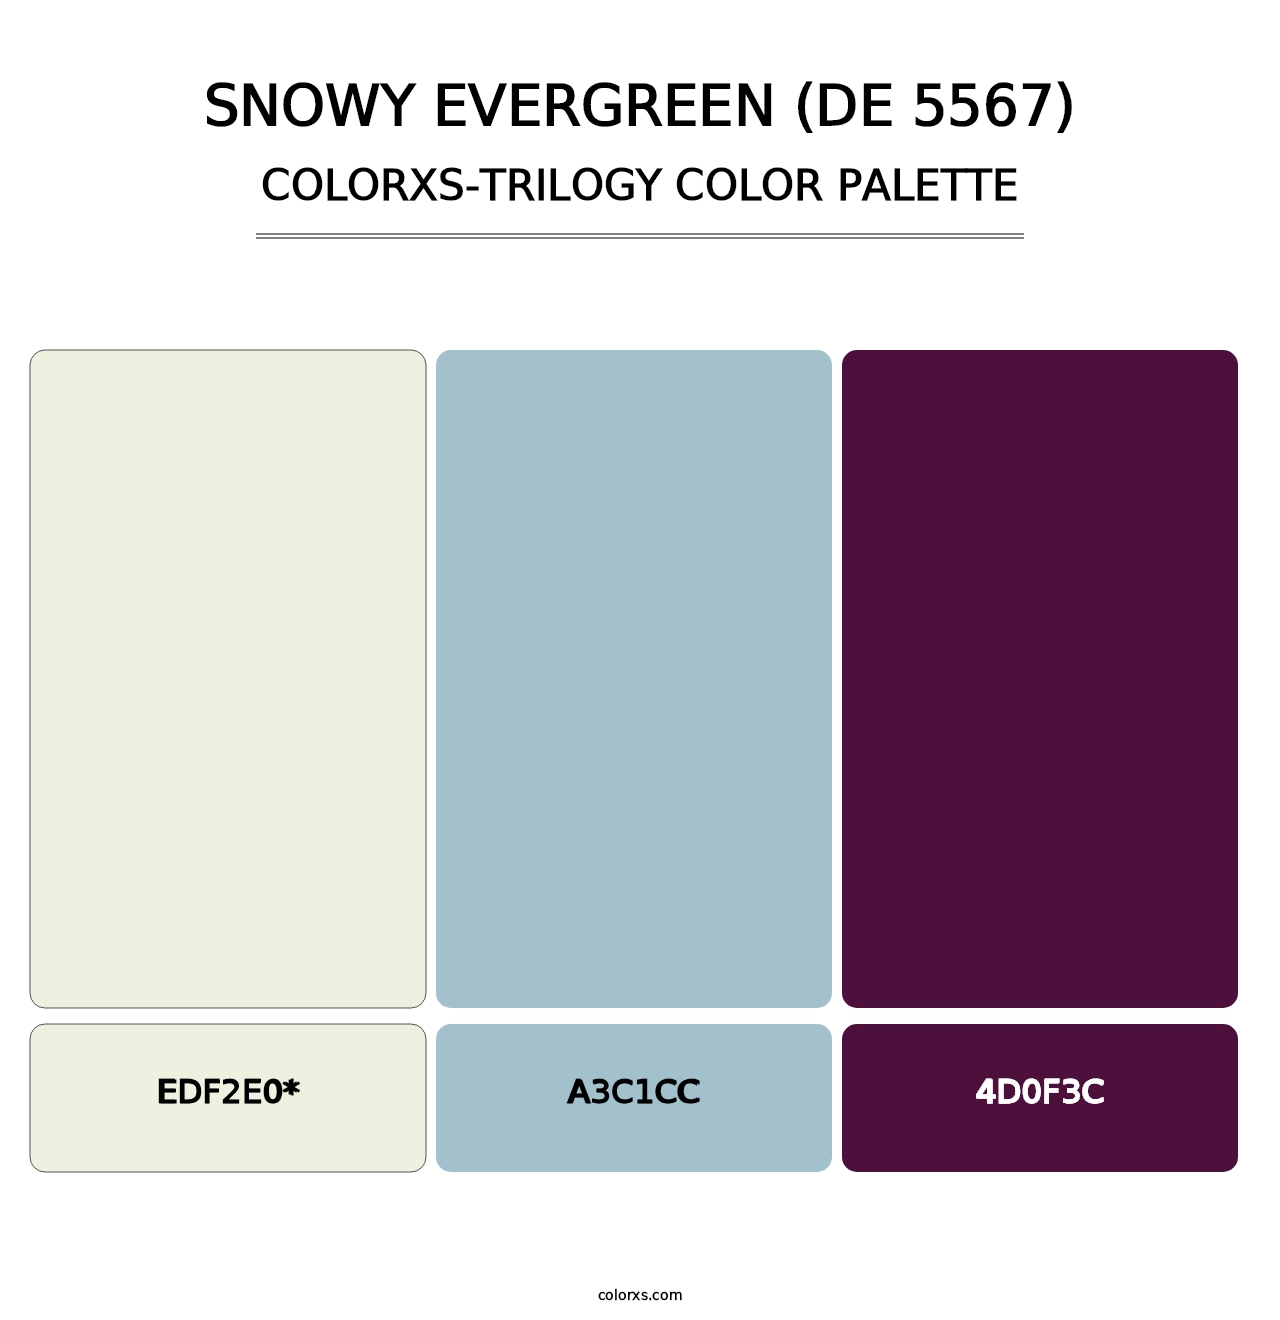 Snowy Evergreen (DE 5567) - Colorxs Trilogy Palette